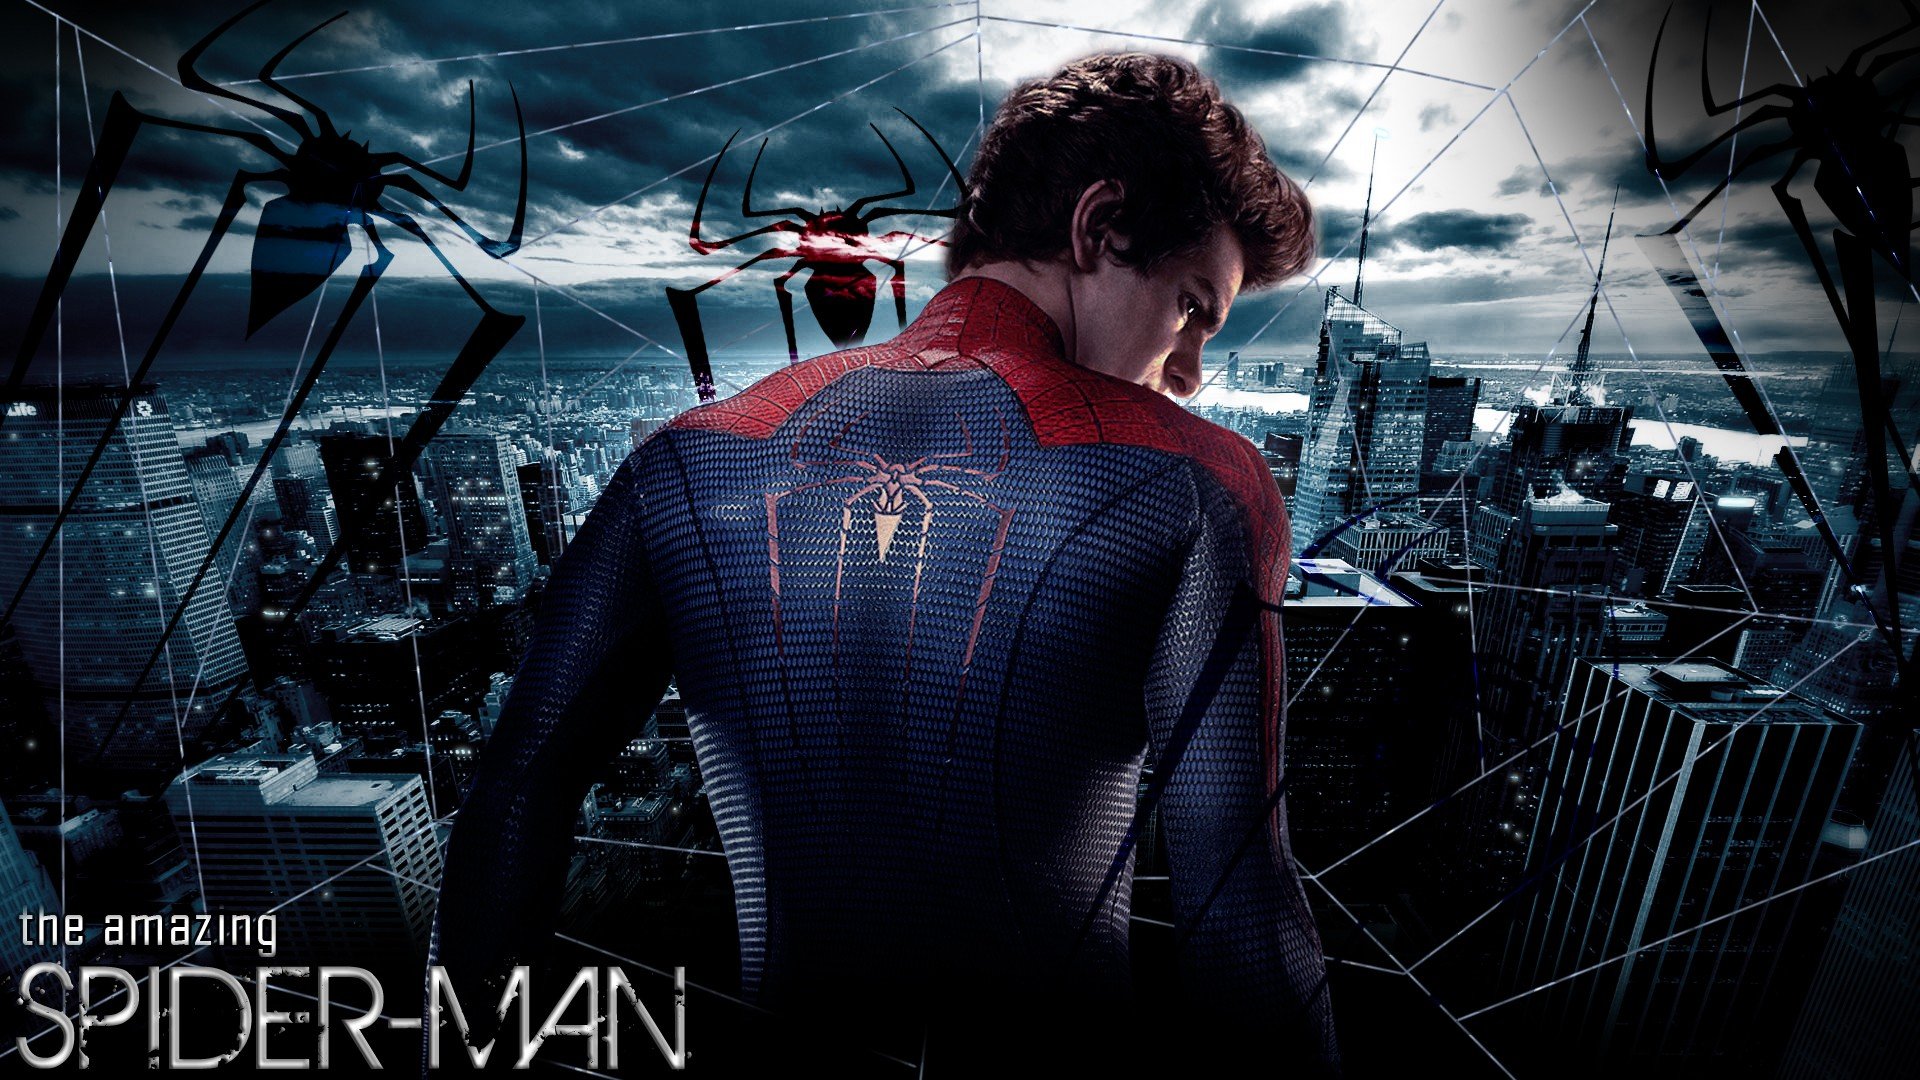 spiderman 1 movie download